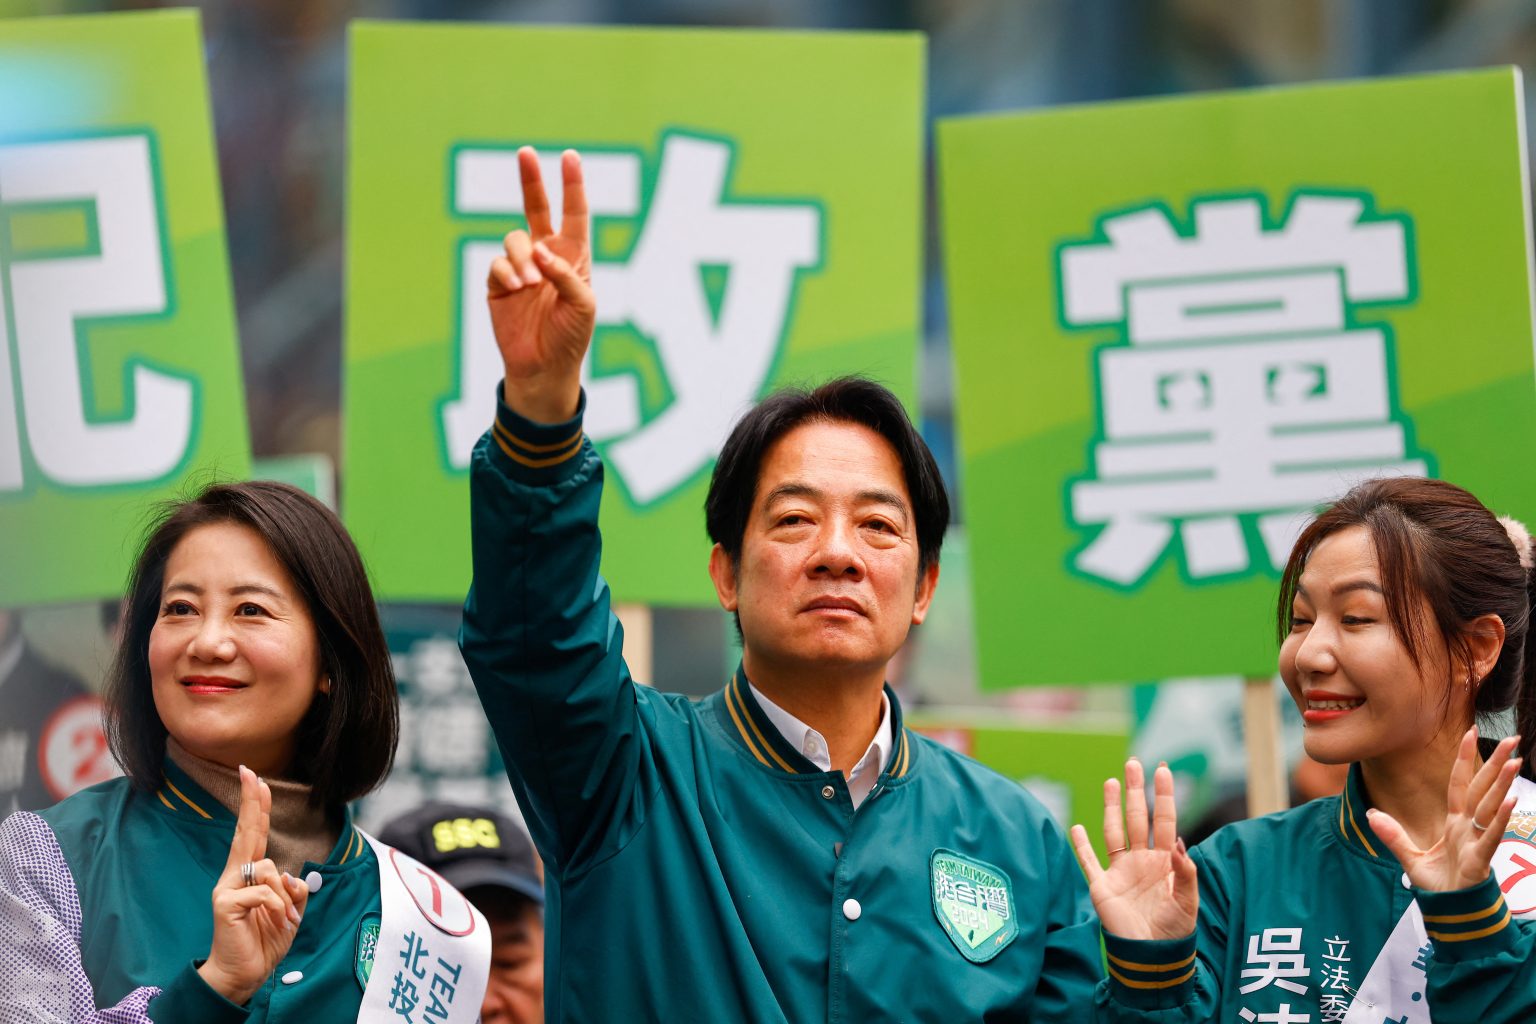 المرشح المؤيد لاستقلال تايوان يفوز بانتخابات الرئاسة